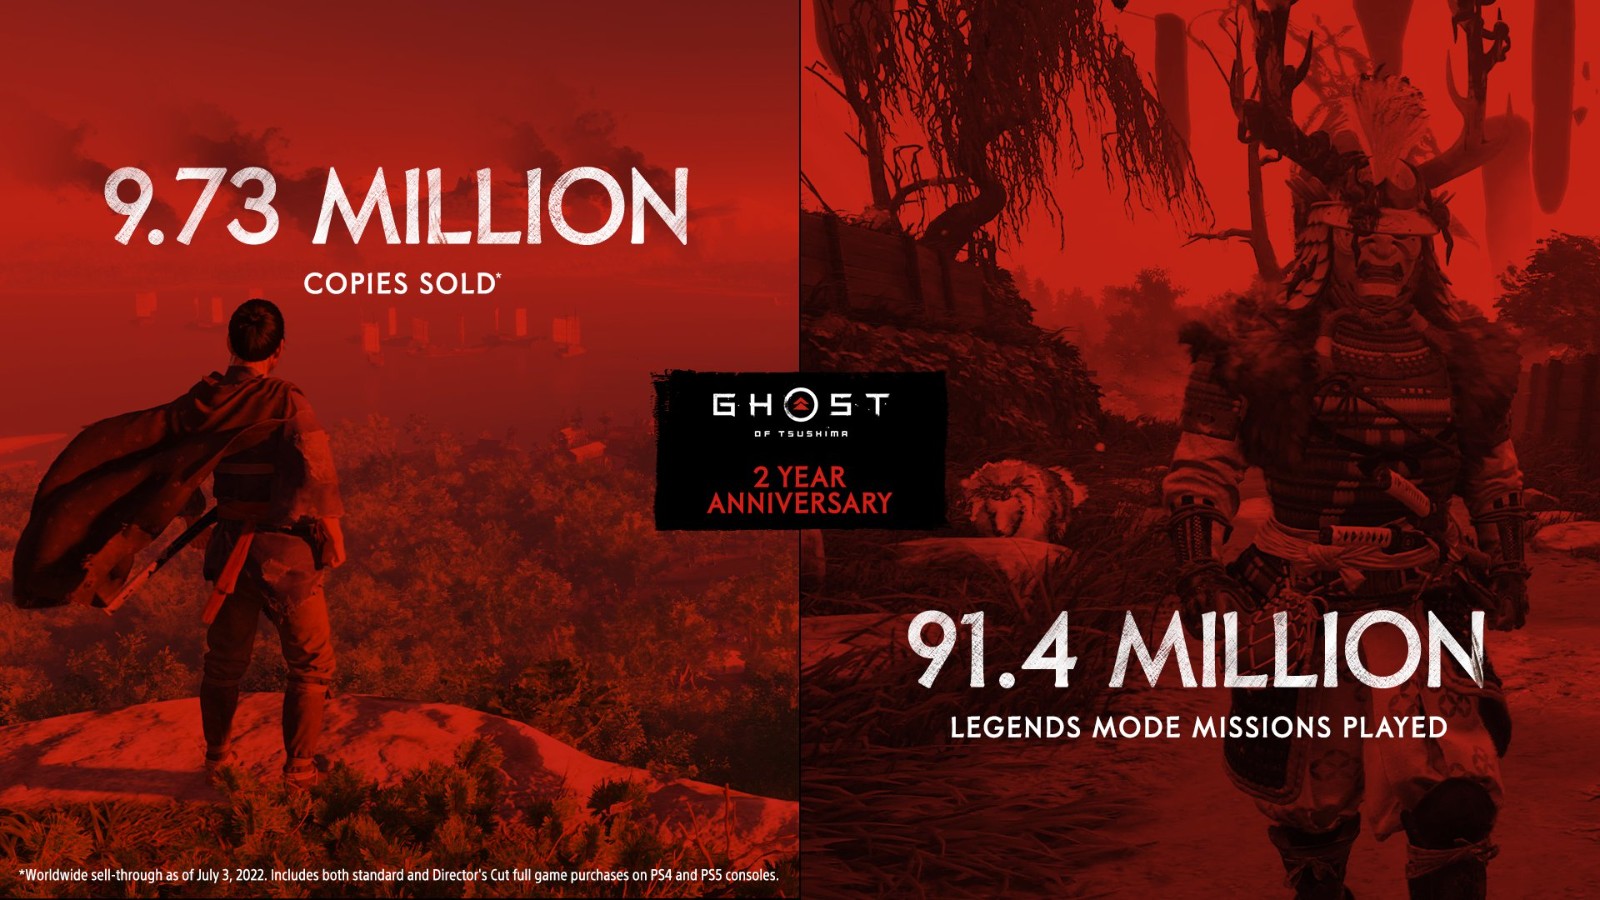 《对马岛之鬼》发售两周年 销量接近1000万